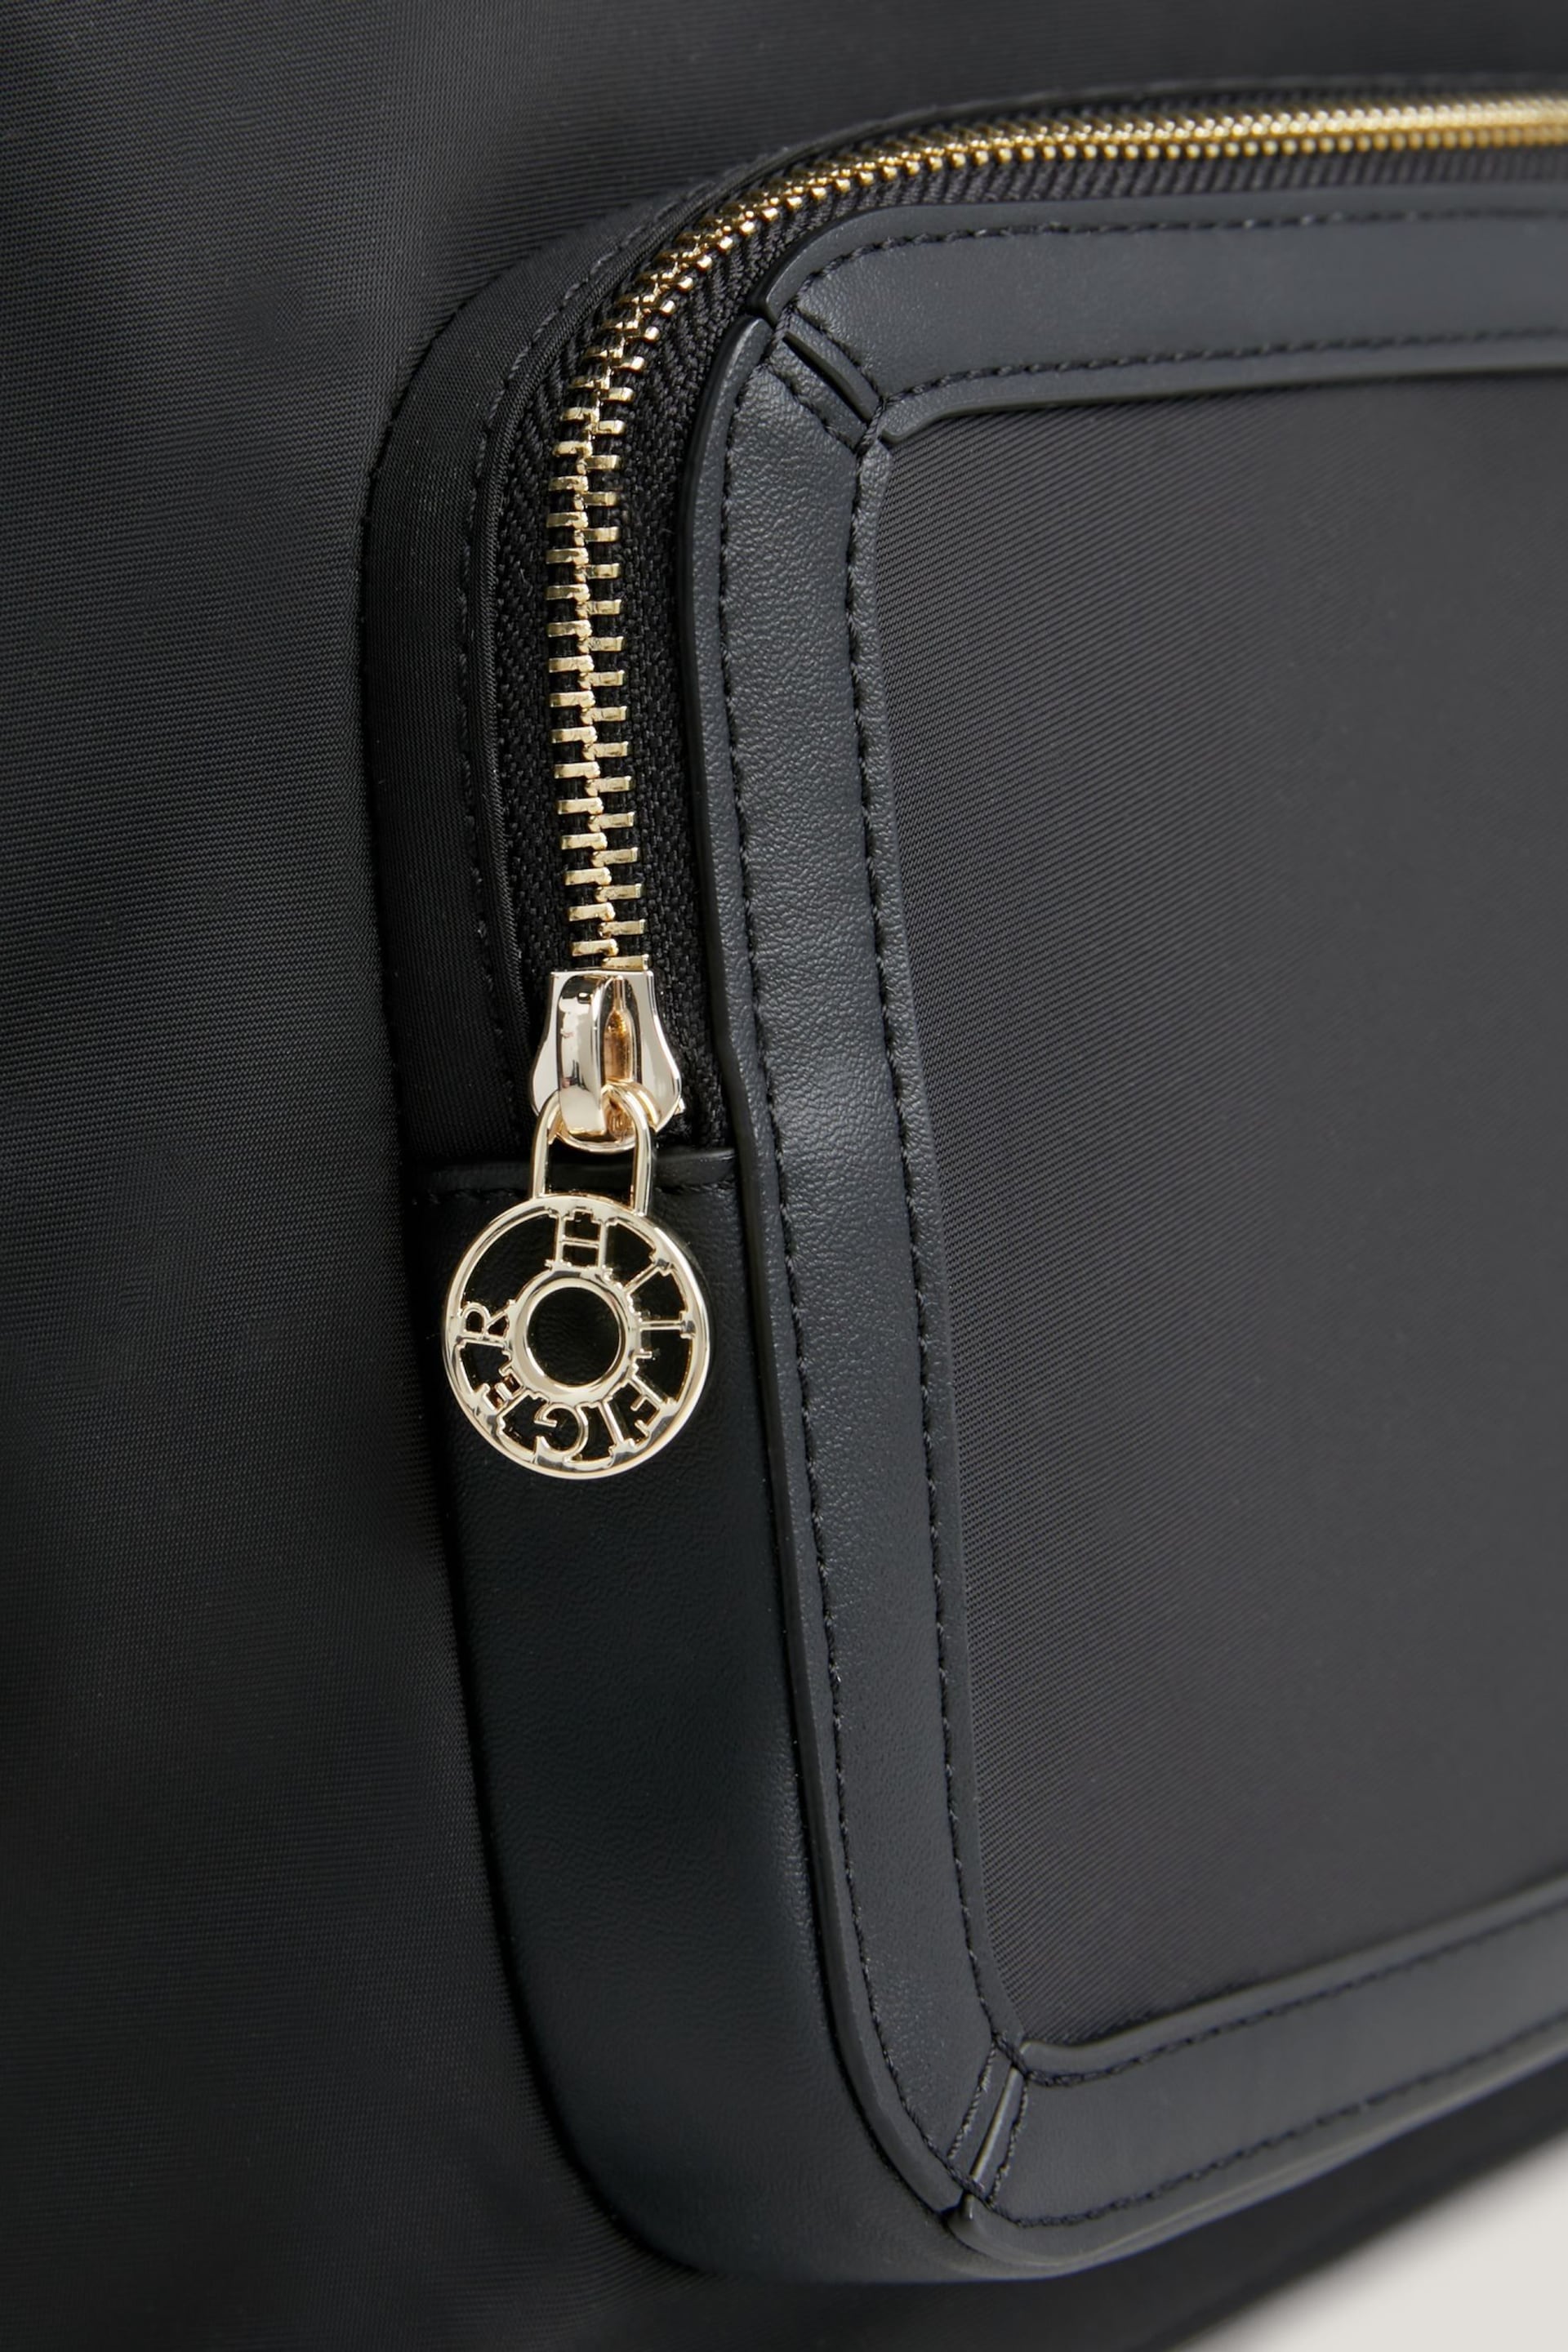 Tommy Hilfiger Essential Black Backpack - Image 5 of 6